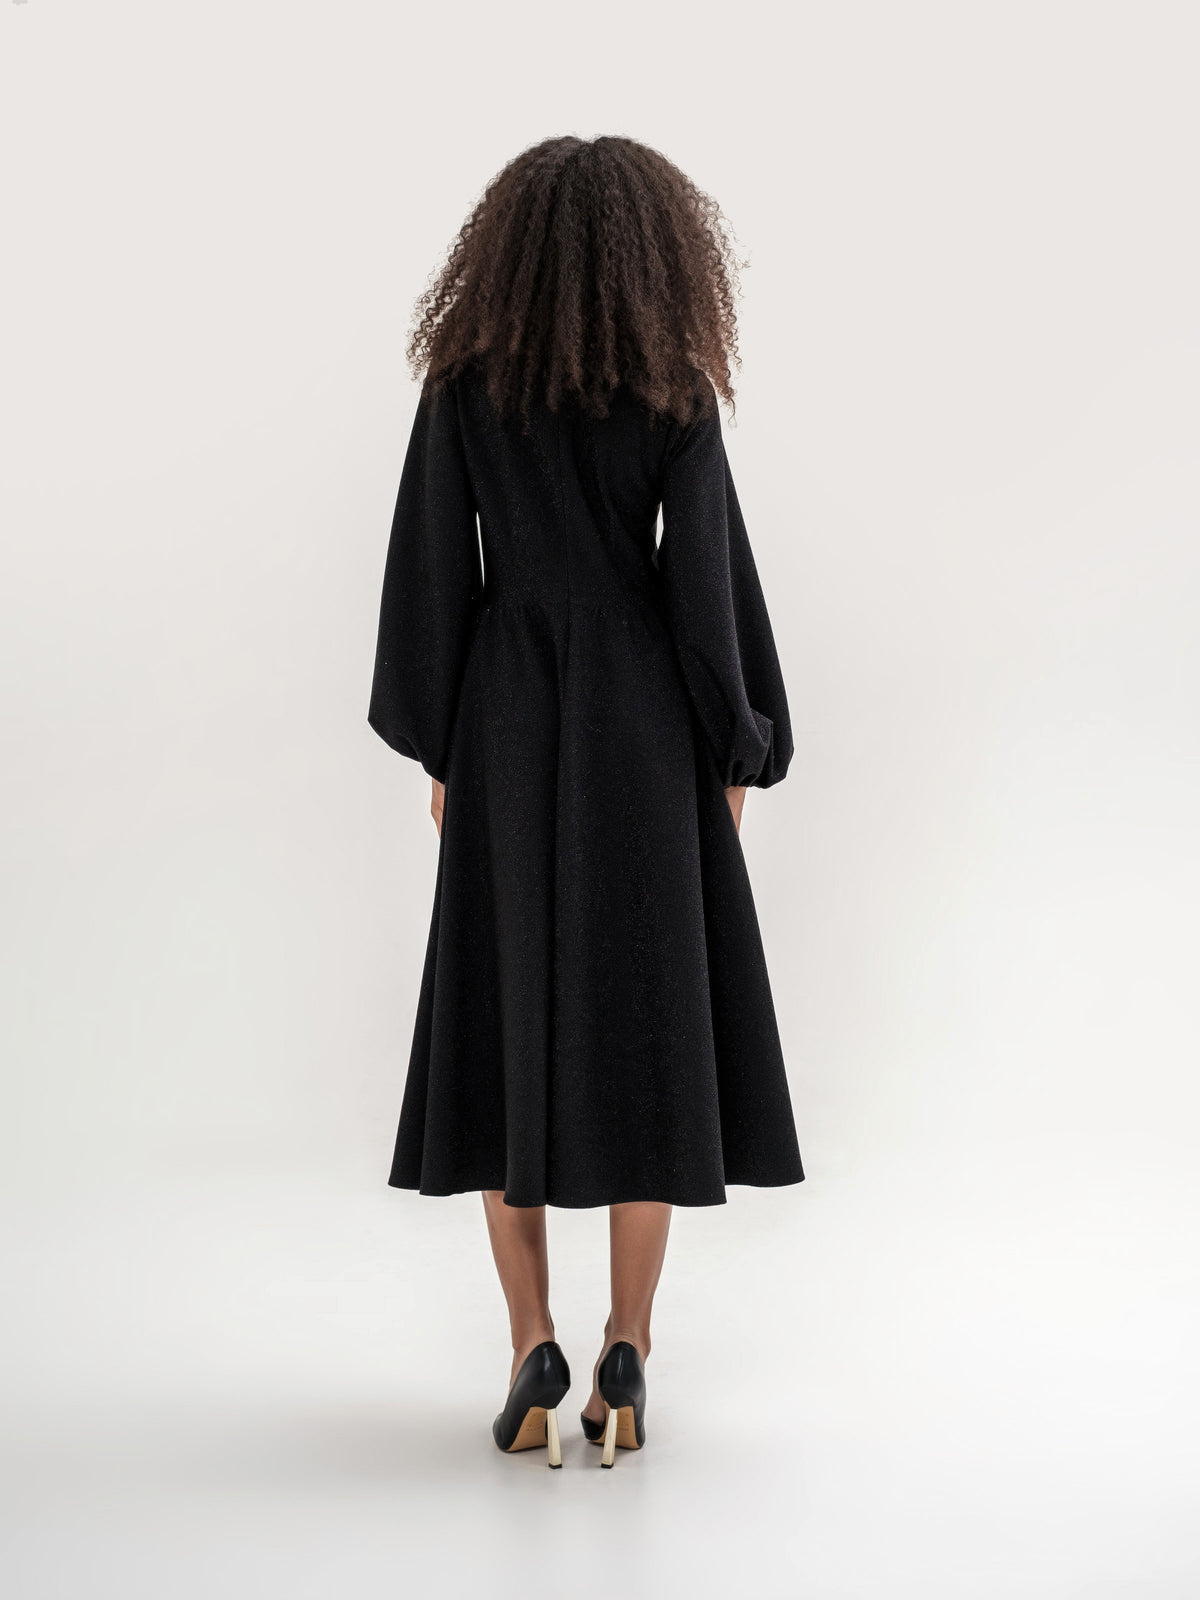 Black shiny thread midi dress with voluminous sleeves and a V-neck